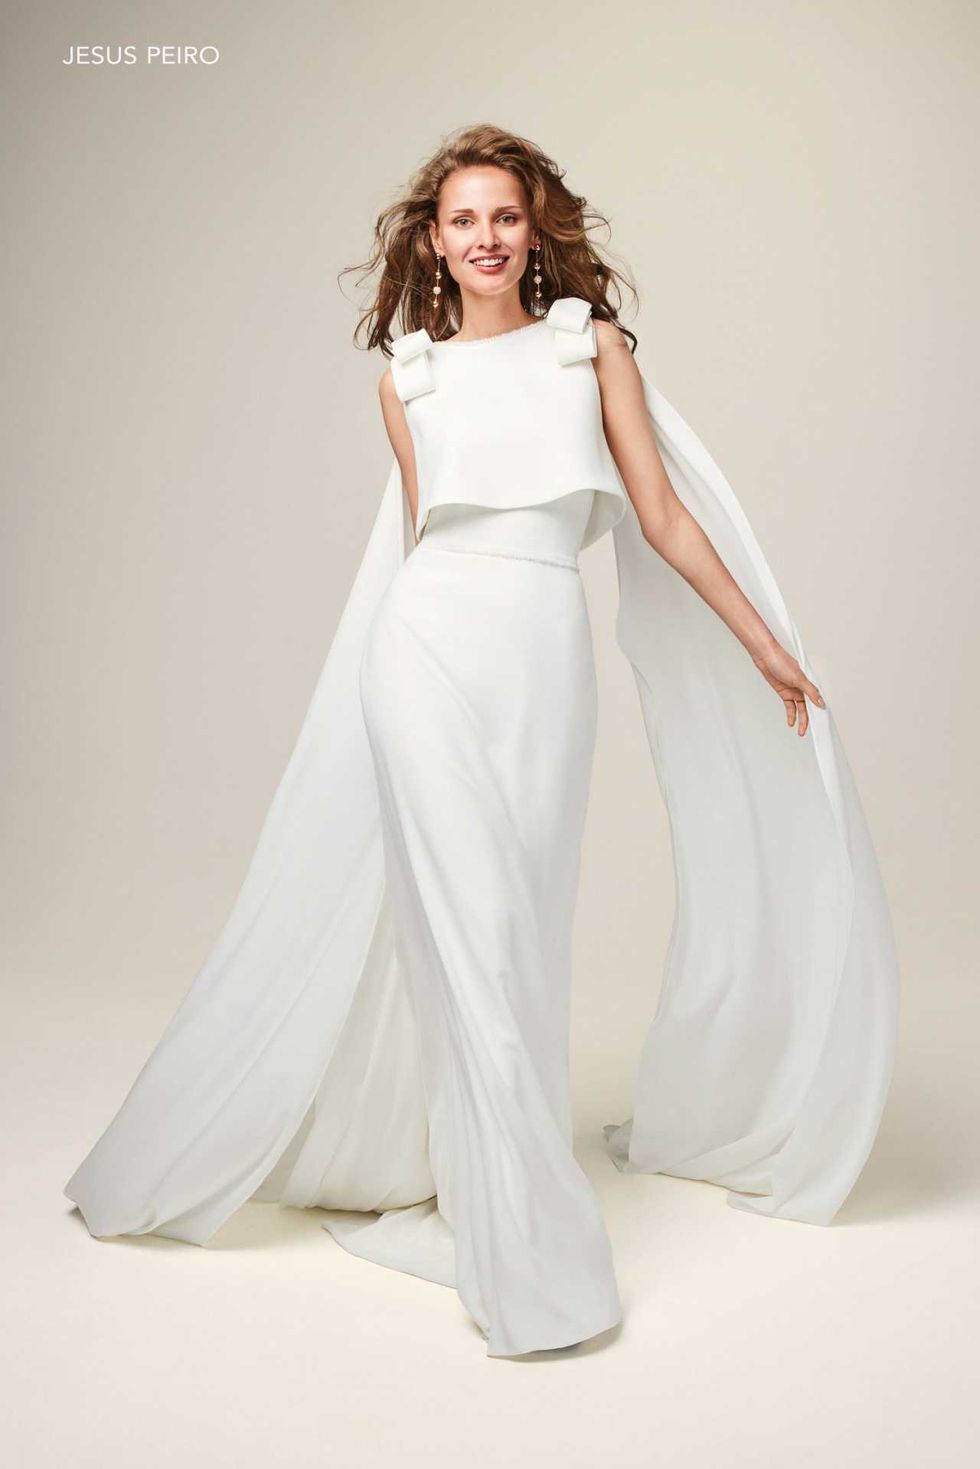 Vestidos blancos para novias civiles: 12 modelos preciosos baratos de Mango  y Zara